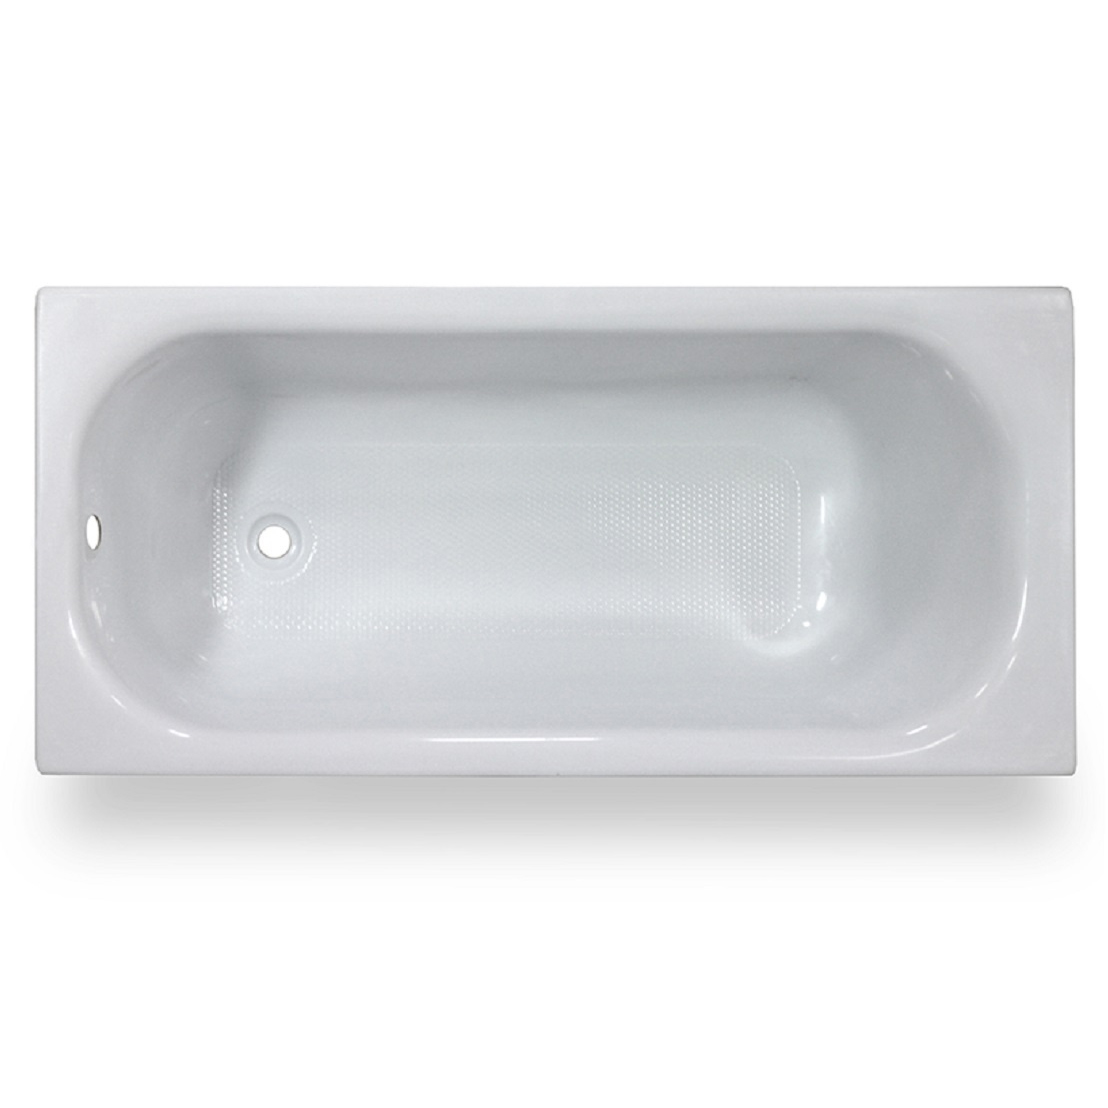 Акриловая ванна Тритон Ультра 160, цвет белый Щ0000017117 - фото 1